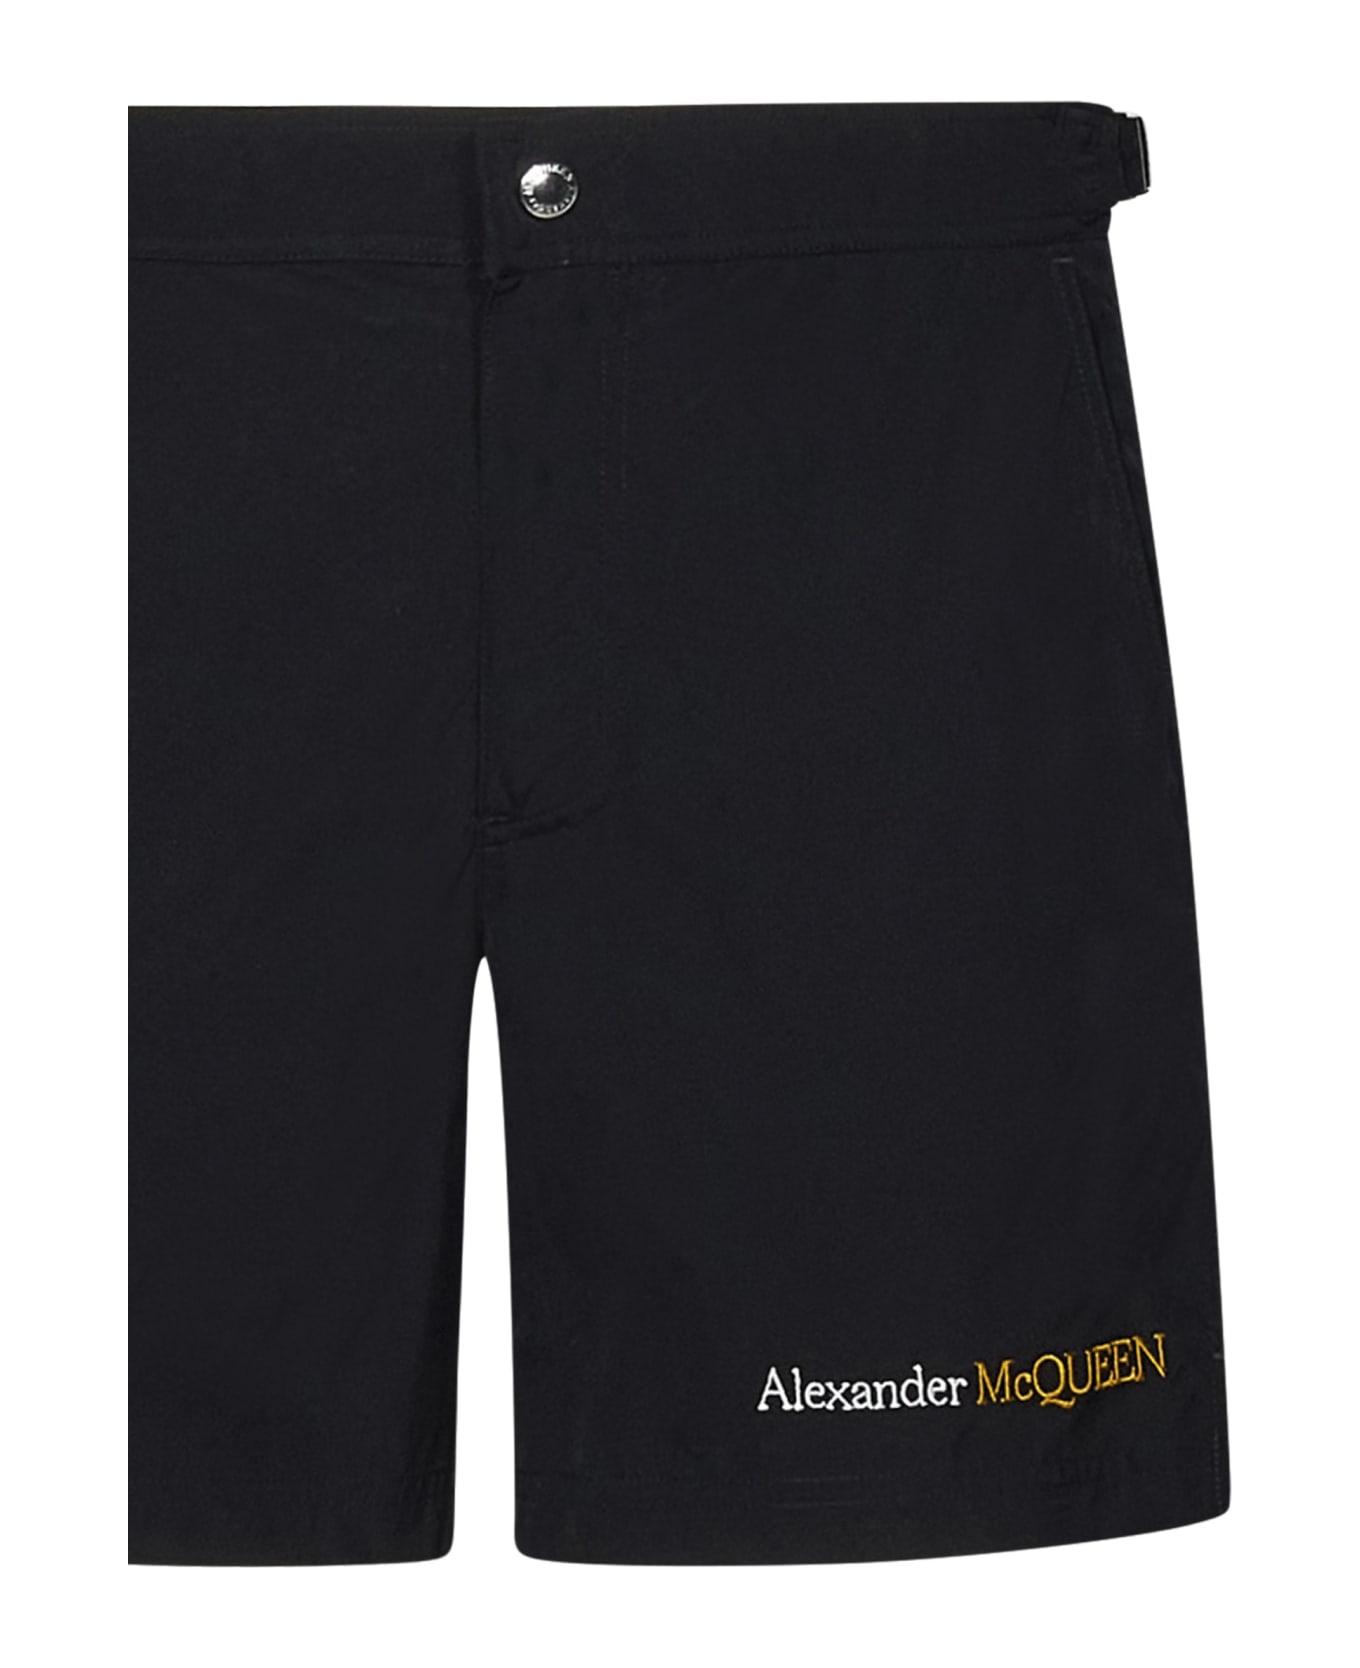 Alexander McQueen Swimsuit - Black スイムトランクス